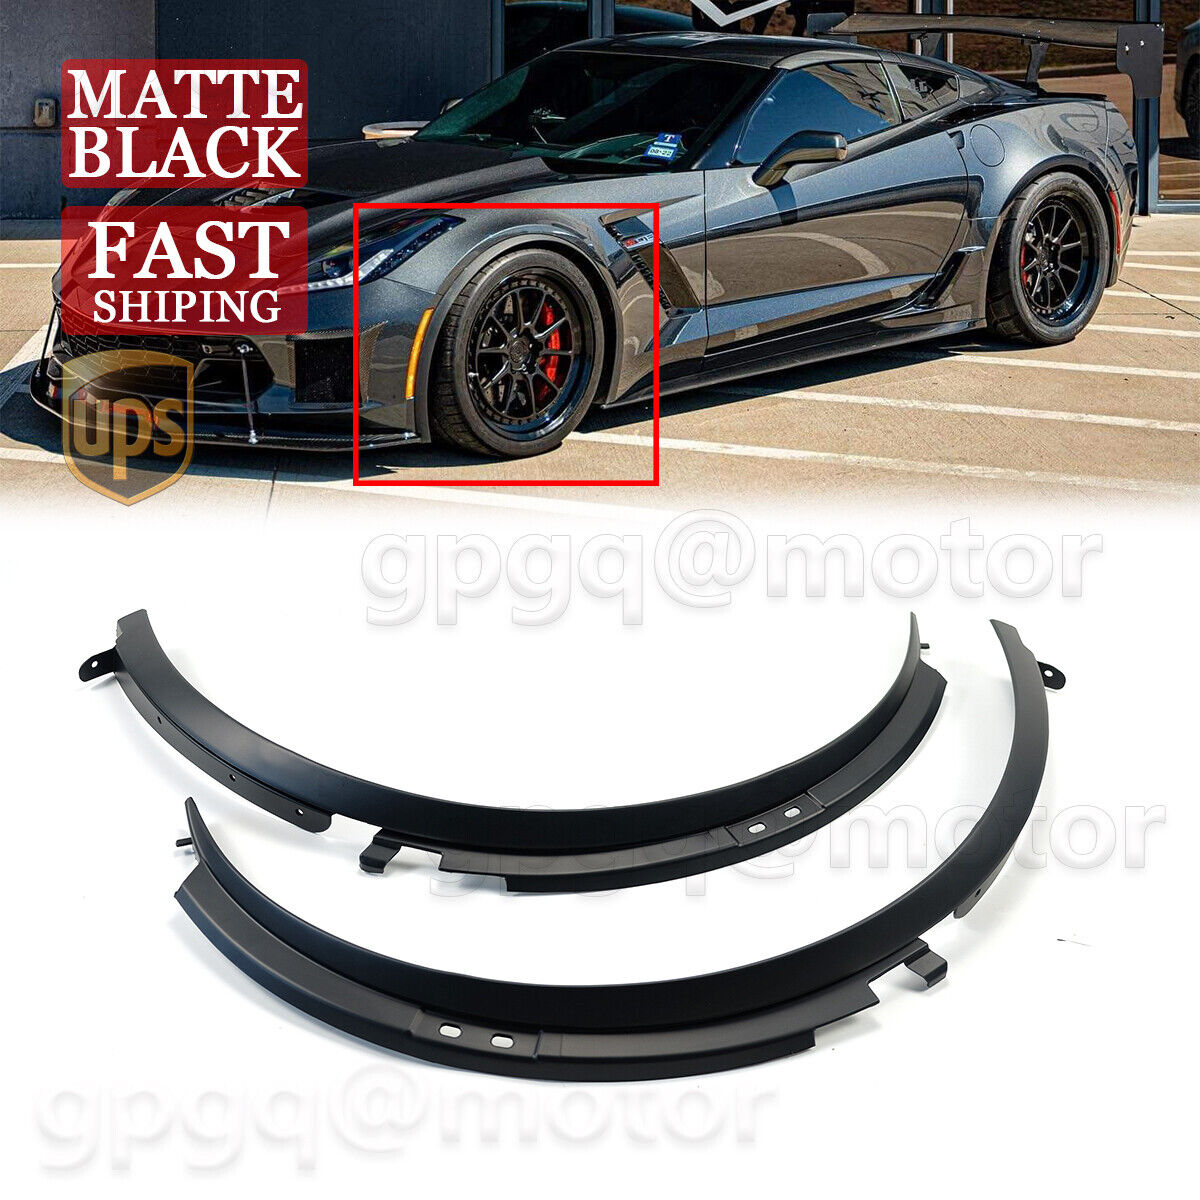 For Corvette C7 Z06 2014-2019 1 Pair Matte Black Front Wheel Trim Fender Flares